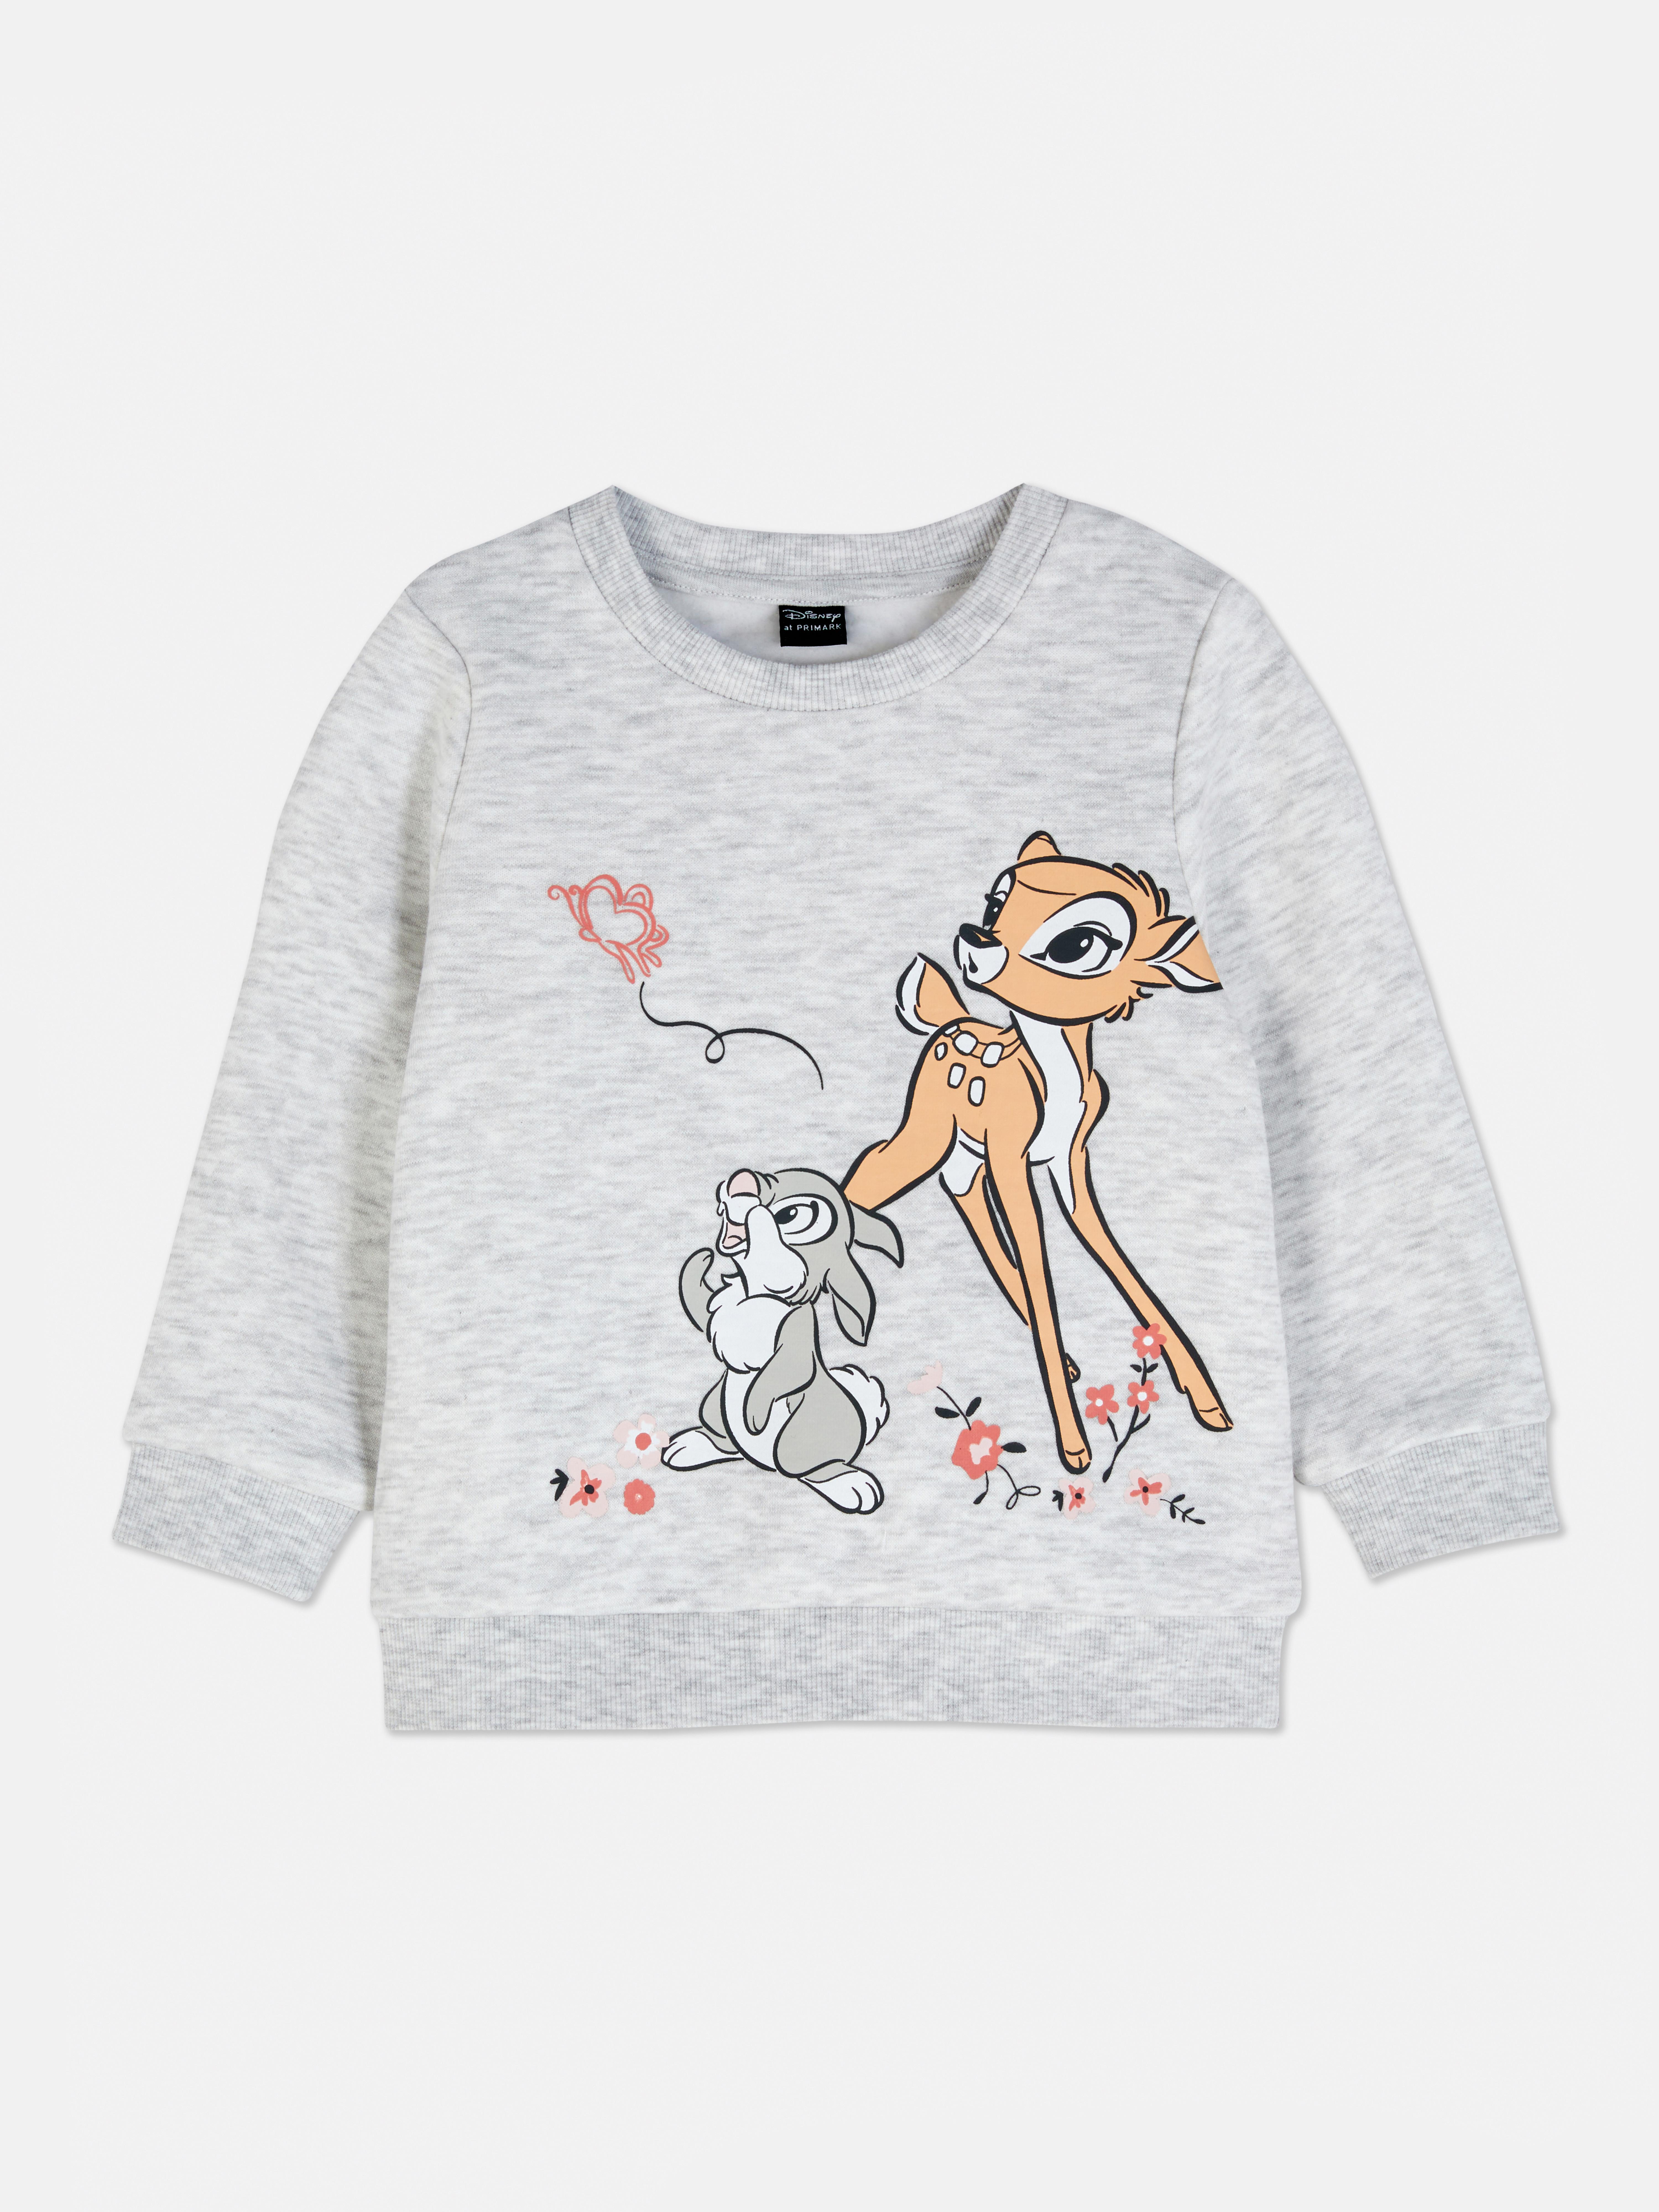 Disney's Bambi Pullover Jumper